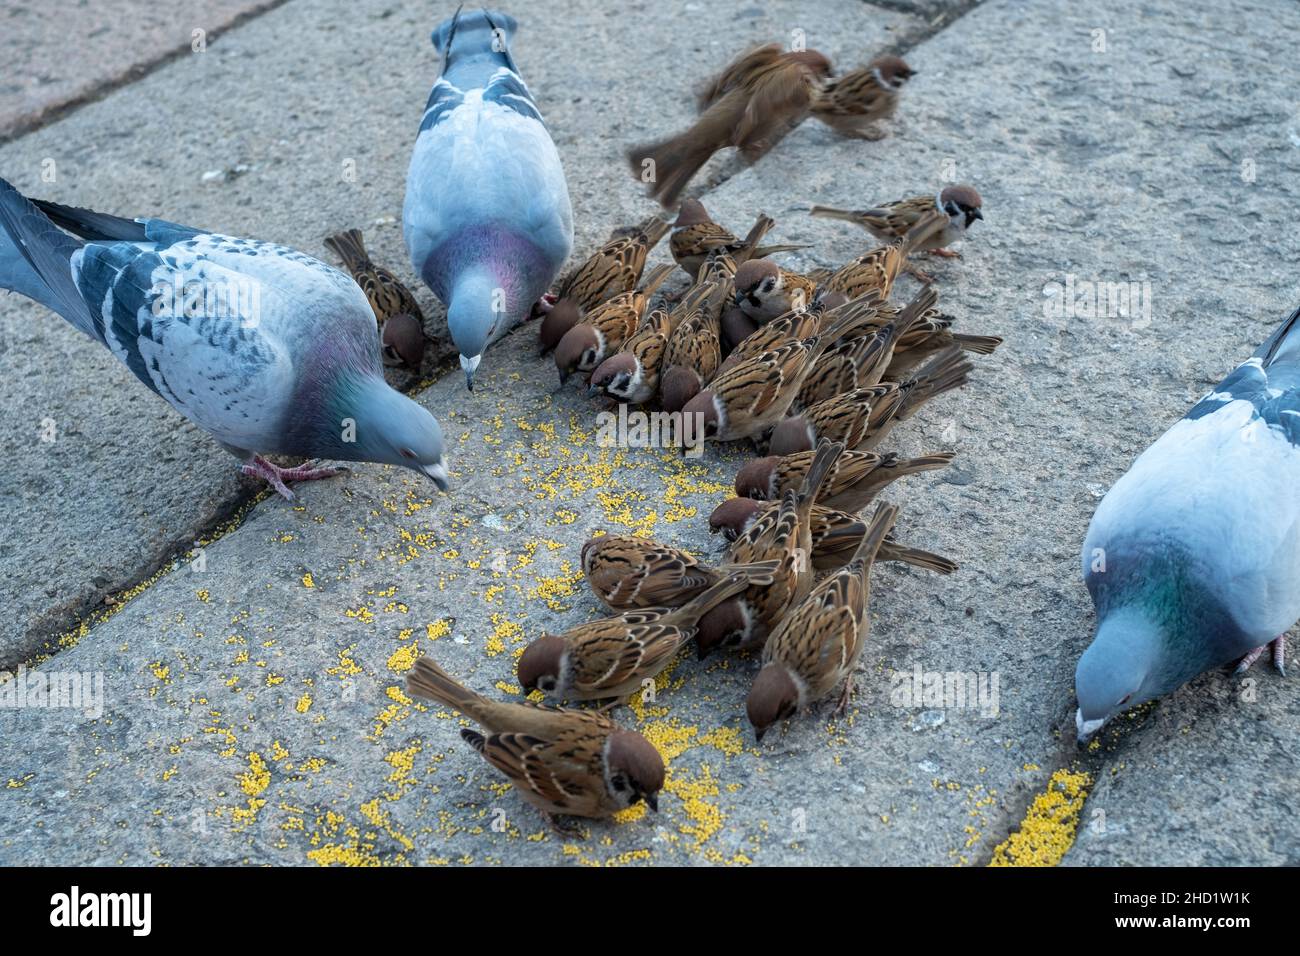 Un groupe d'épars et de pigeons se nourrissent ensemble dans un lieu touristique de Pékin, en Chine. Banque D'Images